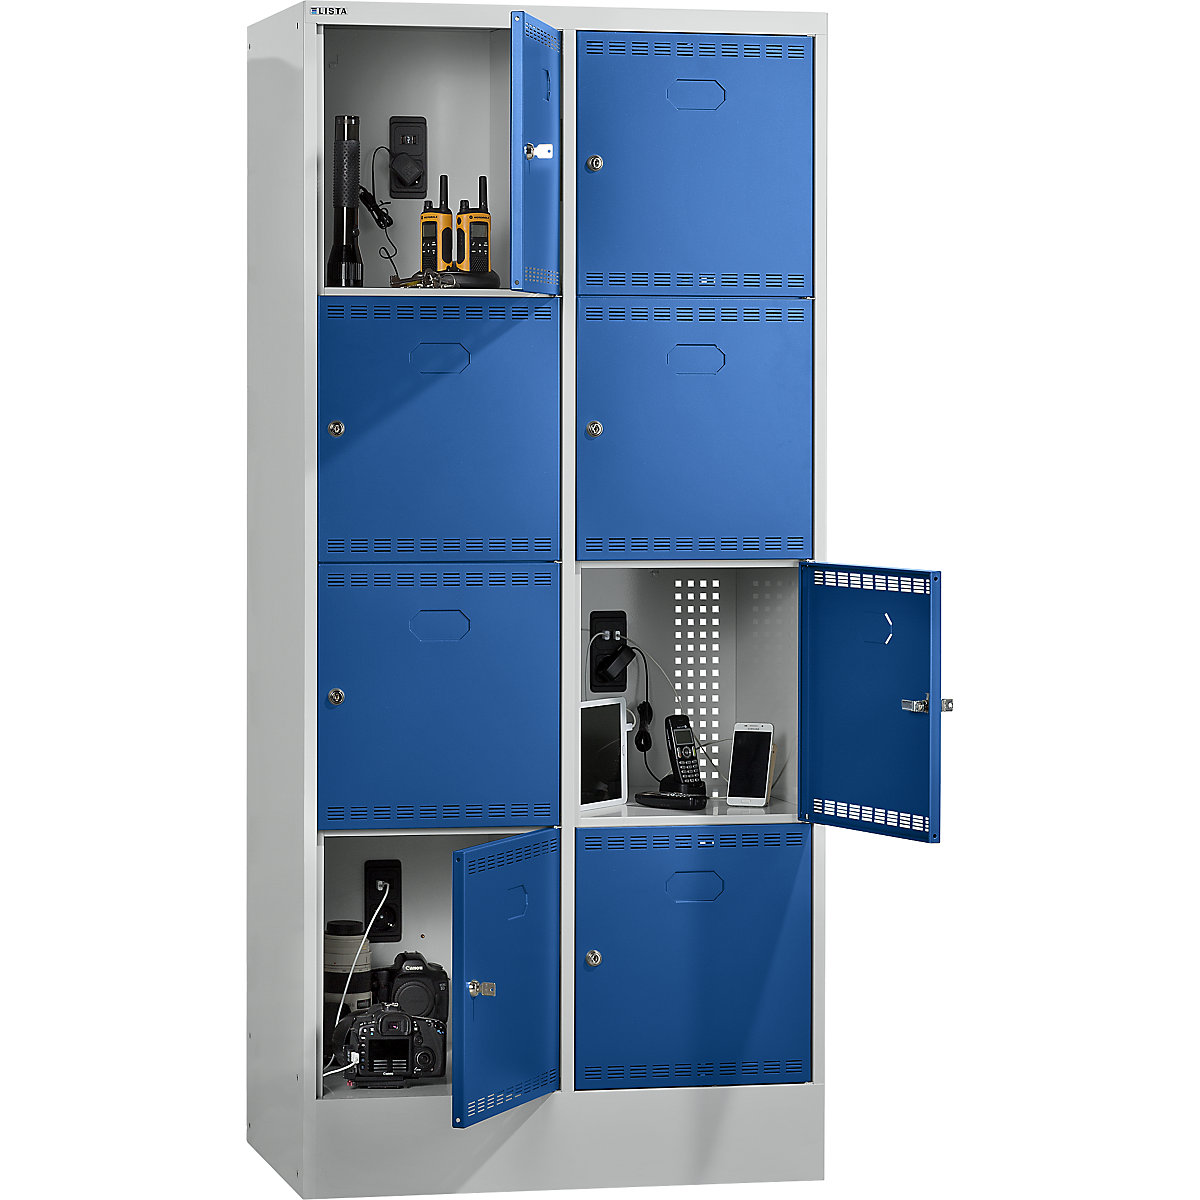 Accuoplaadkast met stroomvoorziening en lockers – LISTA, met 2 x 4 vakken, 1 x 230 V, 1 x RJ45, grijs/blauw-3